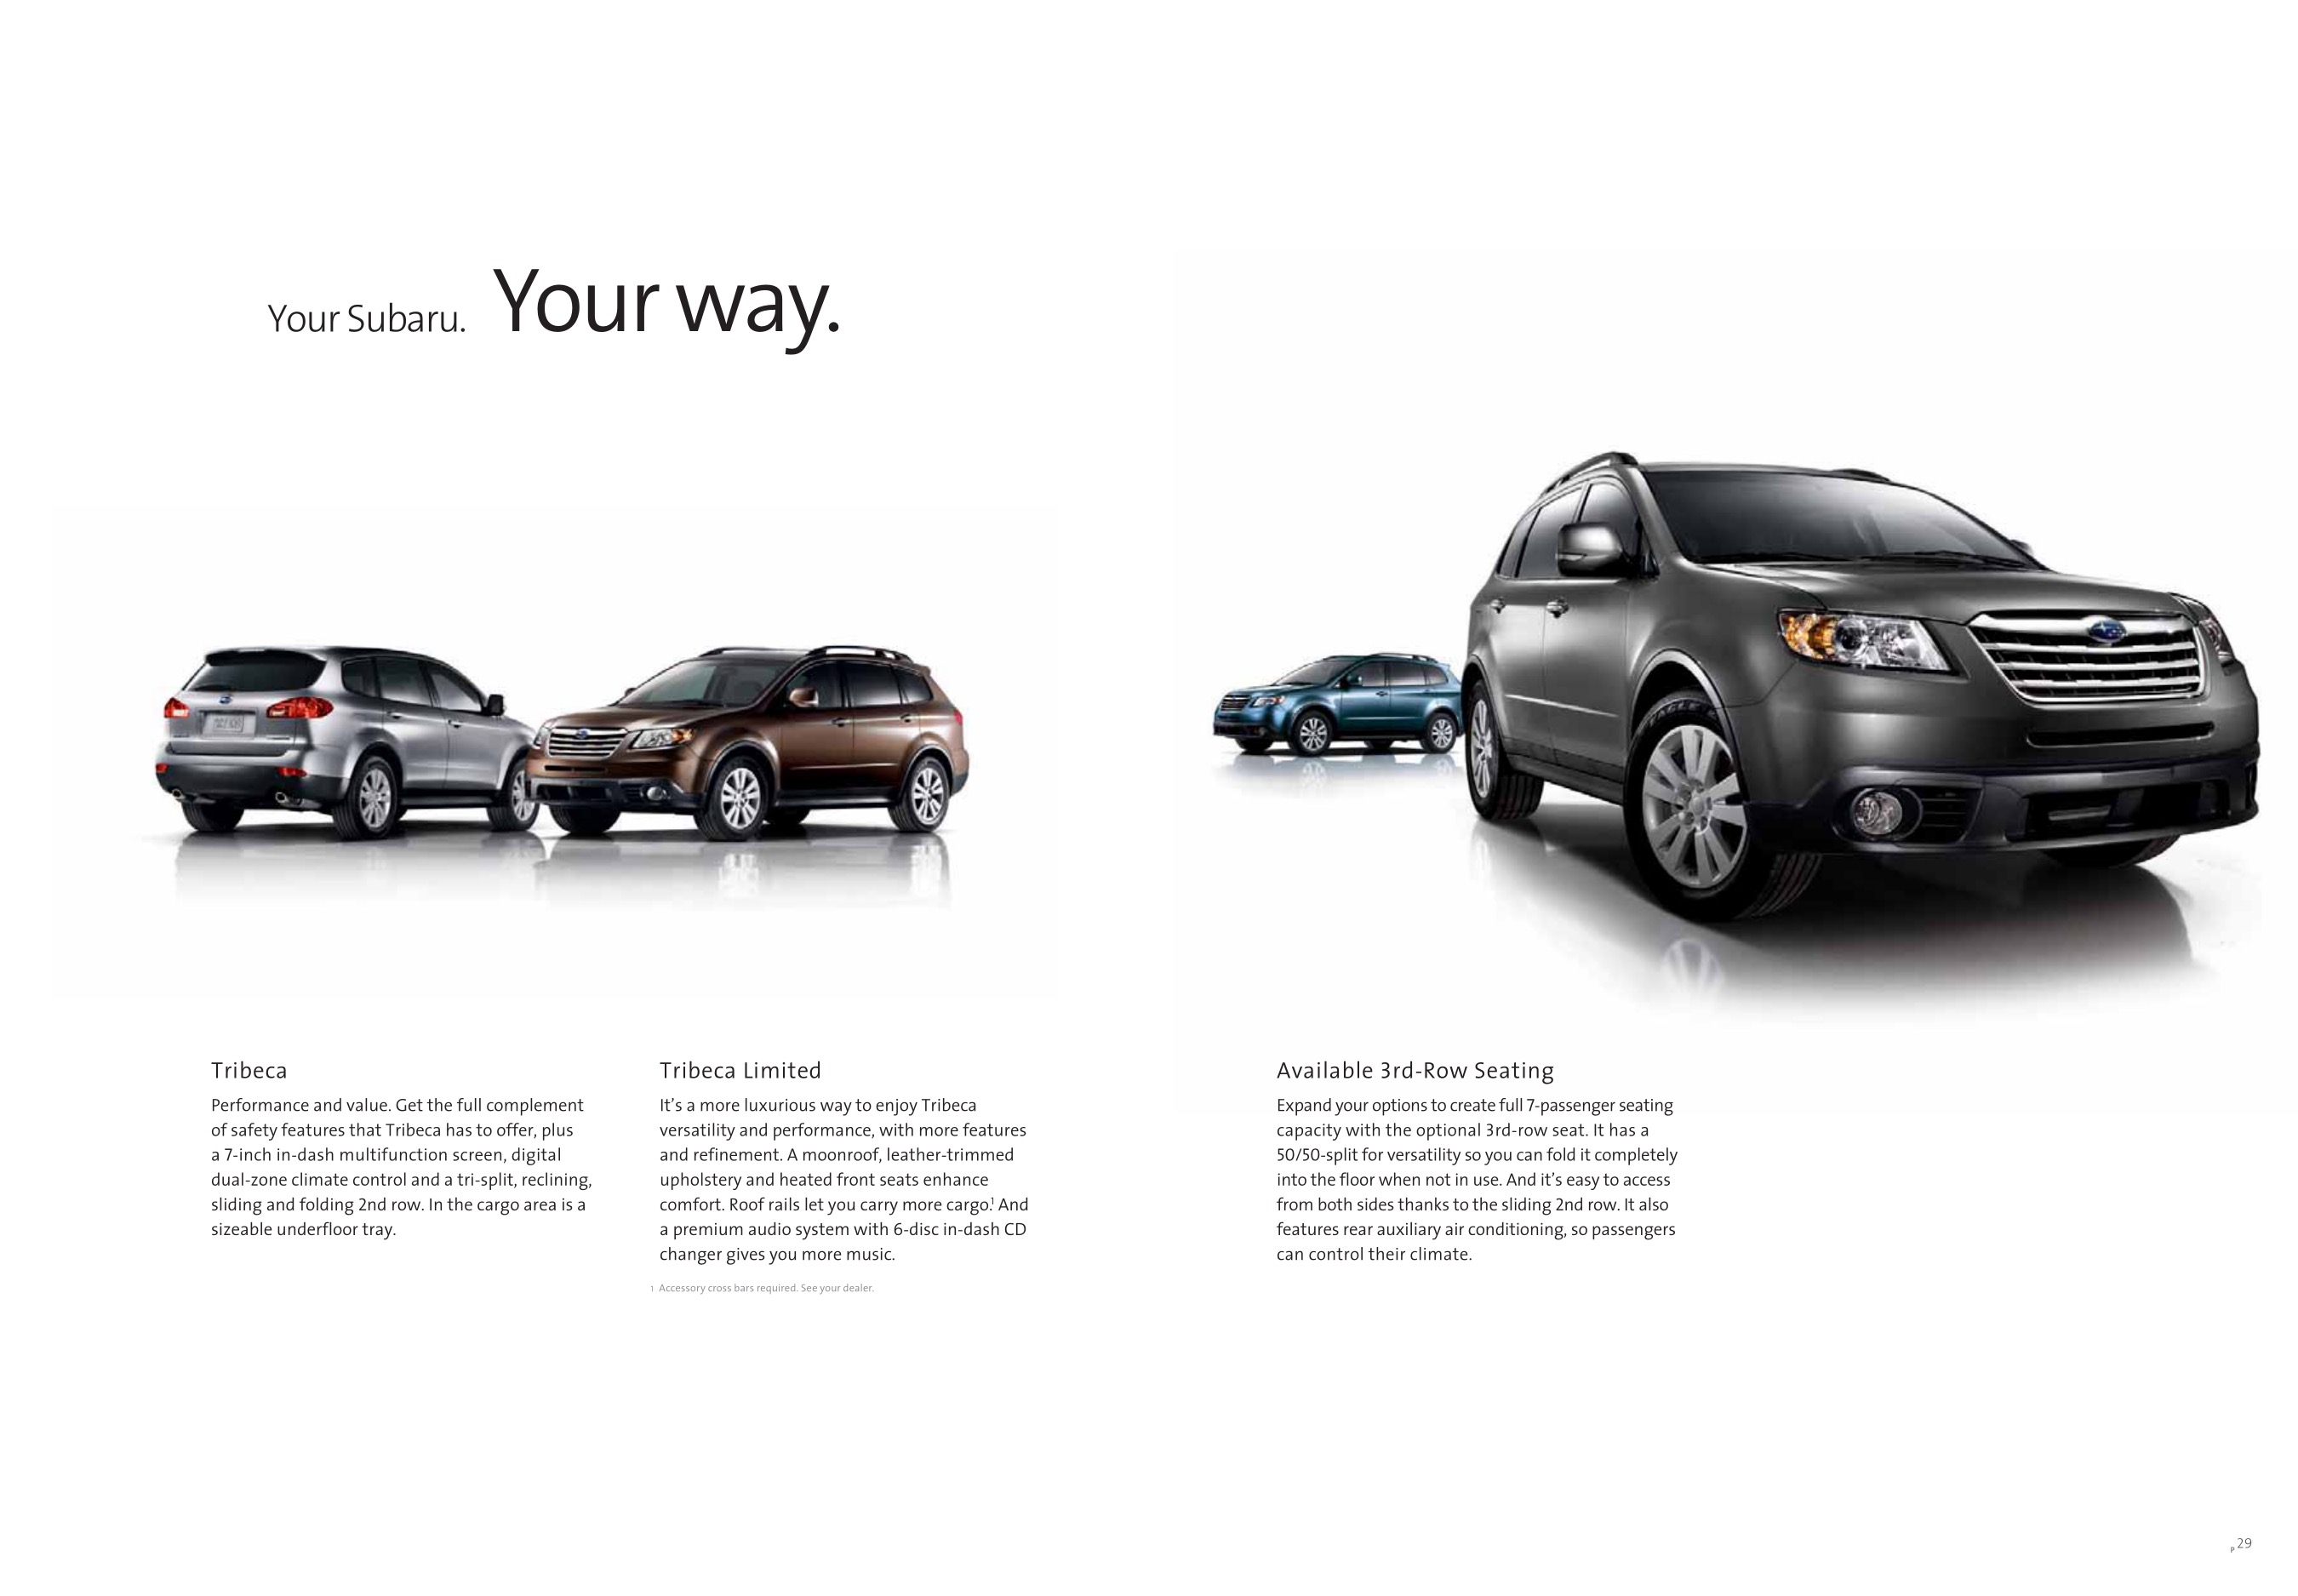 2009 Subaru Tribeca Brochure Page 7